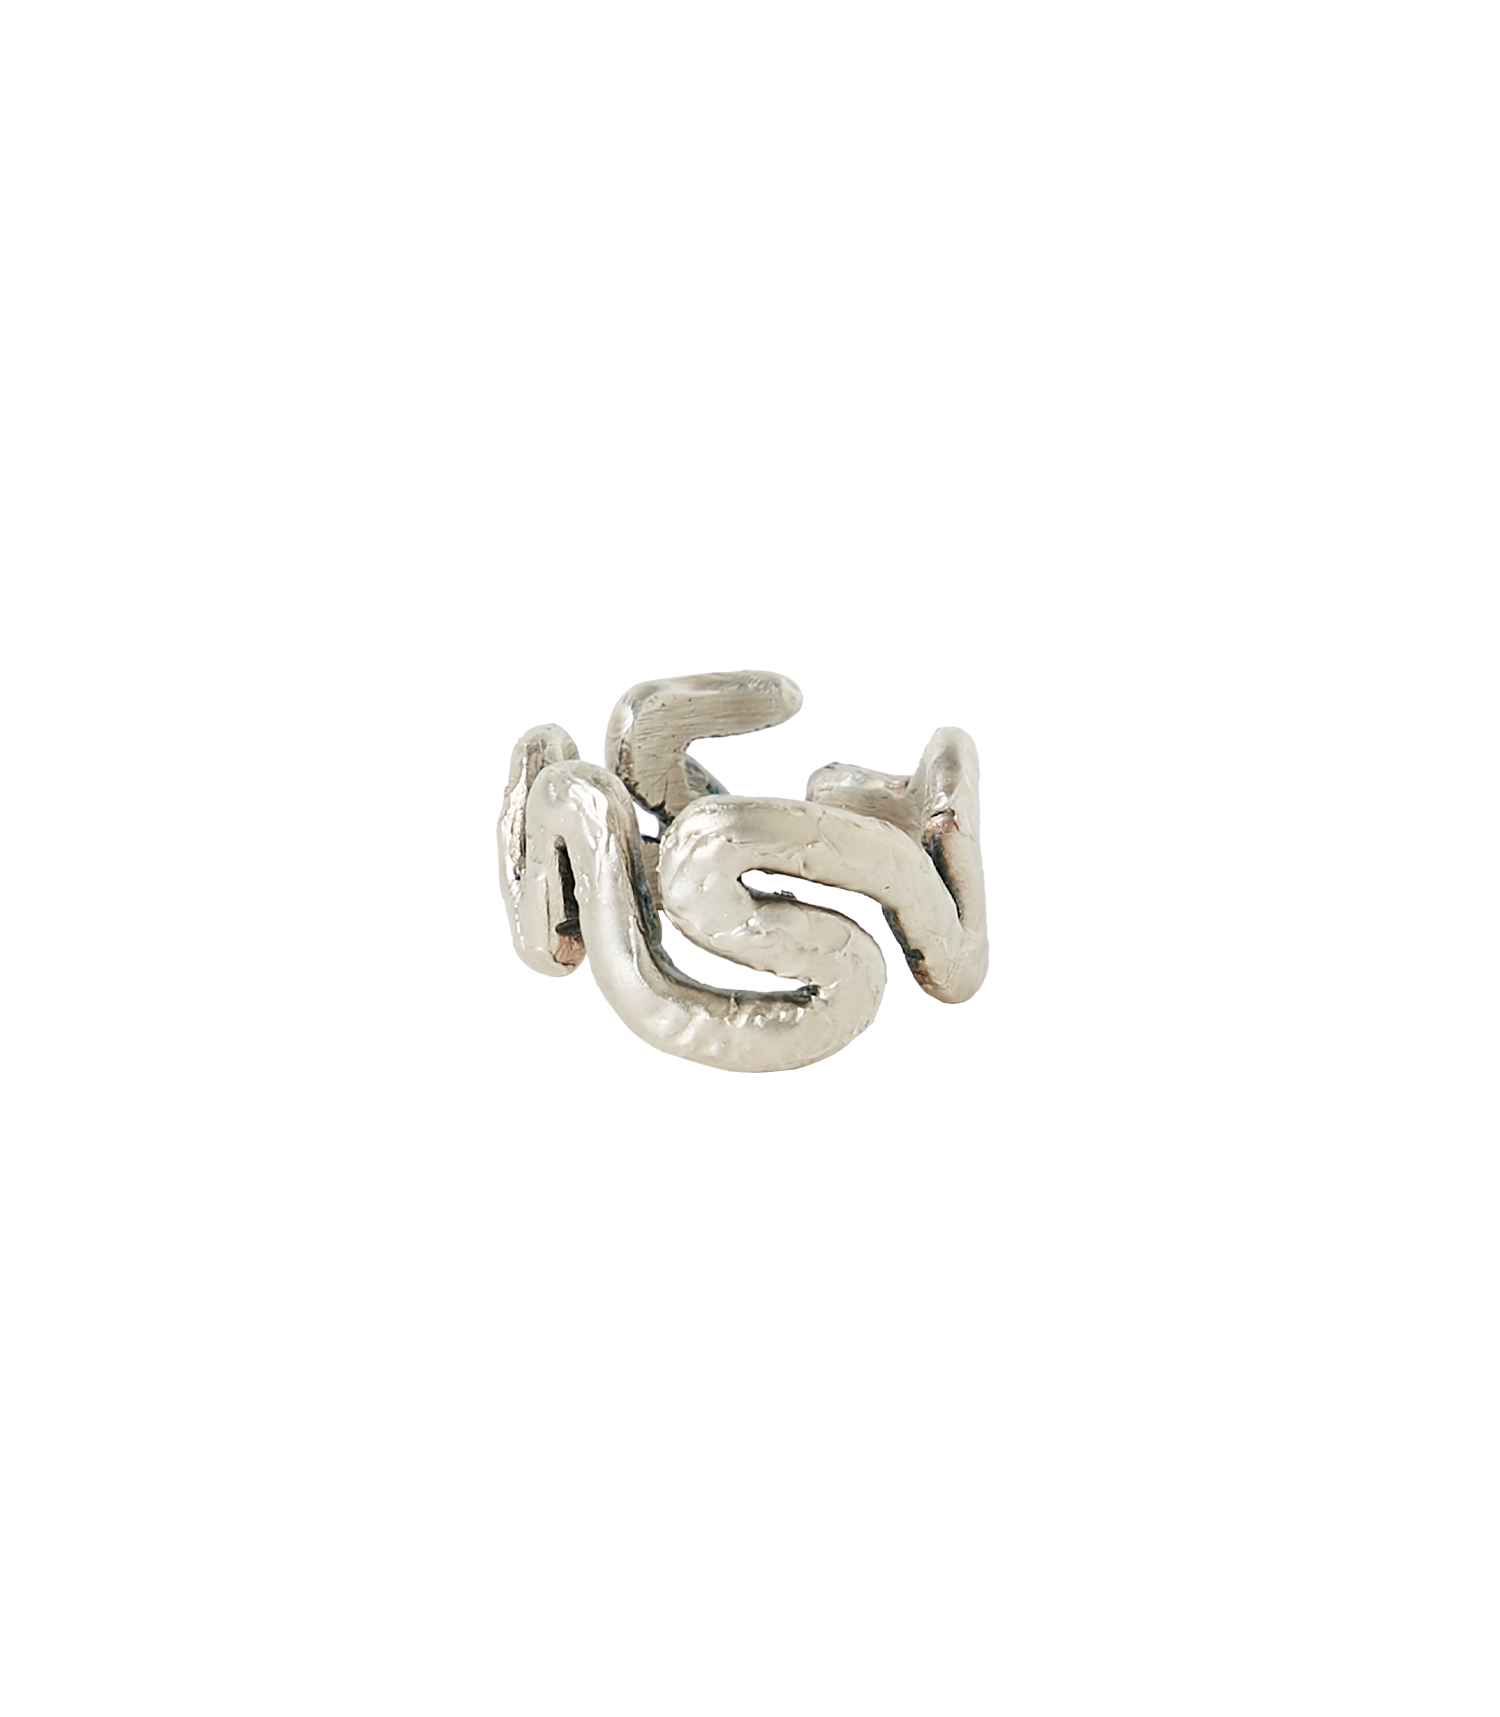 Wyrm Ring - Oxidised Silver